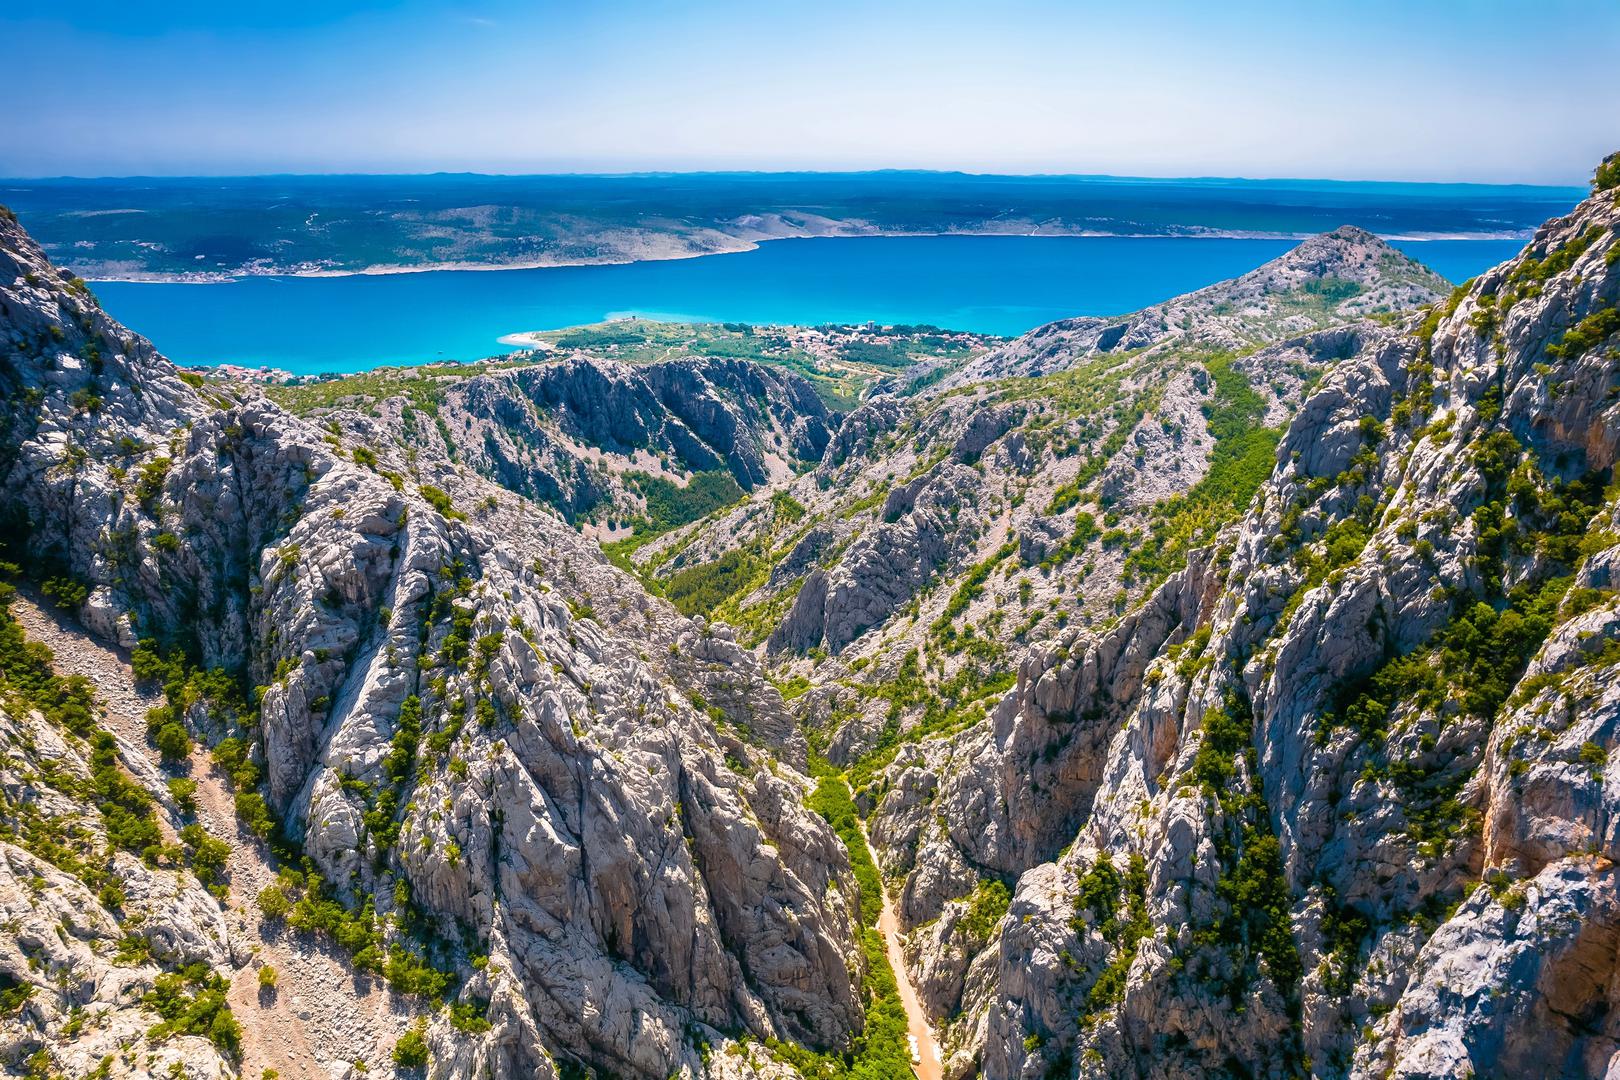 Paklenica: Nacionalni park Paklenica je po proglašenju drugi nacionalni park u Hrvatskoj, proglašen još 19. listopada 1949. godine, tek nekoliko mjeseci nakon NP Plitvička jezera. Temeljni fenomeni NP Paklenica su šume i geomorfološke osobitosti parka.